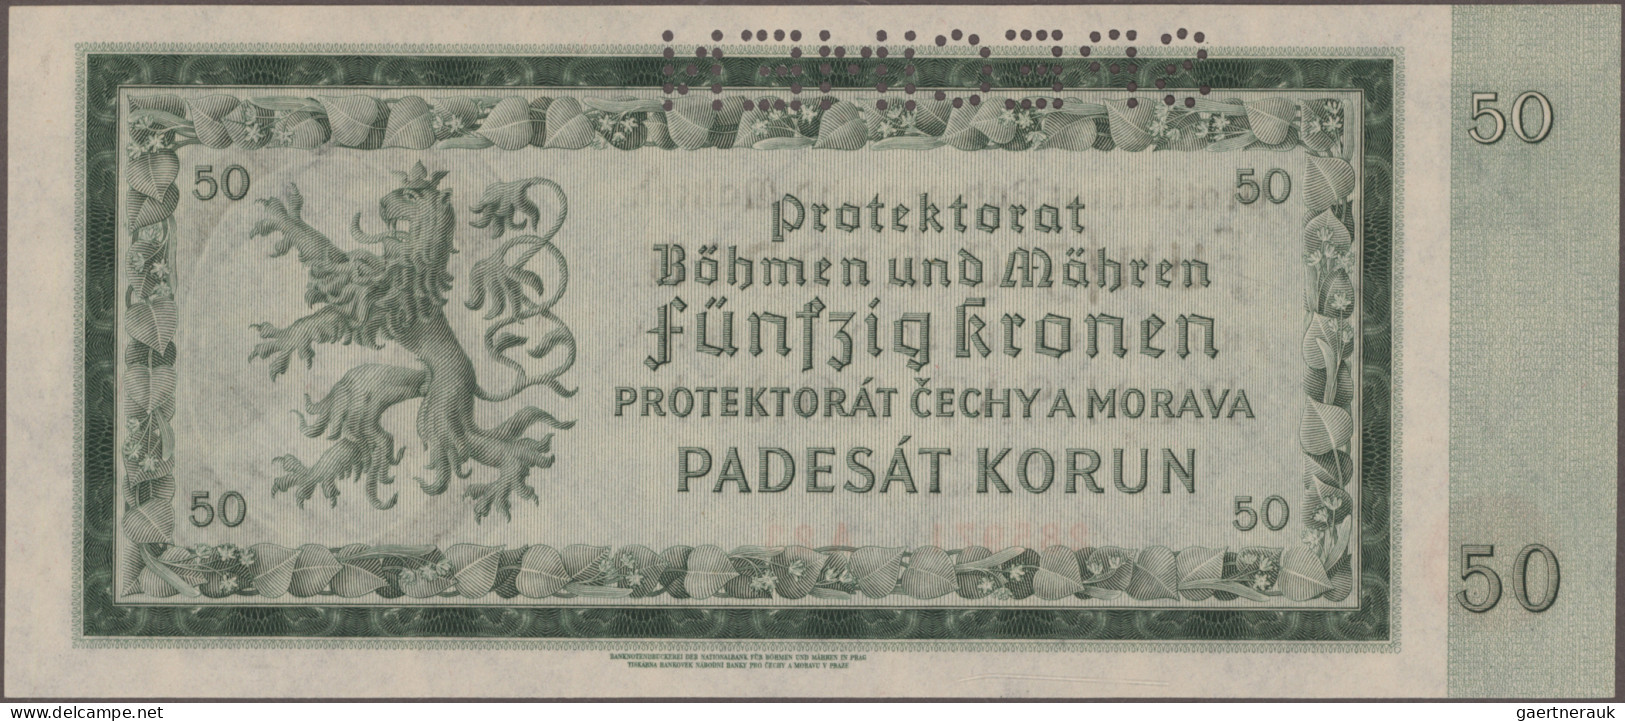 Deutschland - Nebengebiete Deutsches Reich: Nationalbank für Böhmen und Mähren,